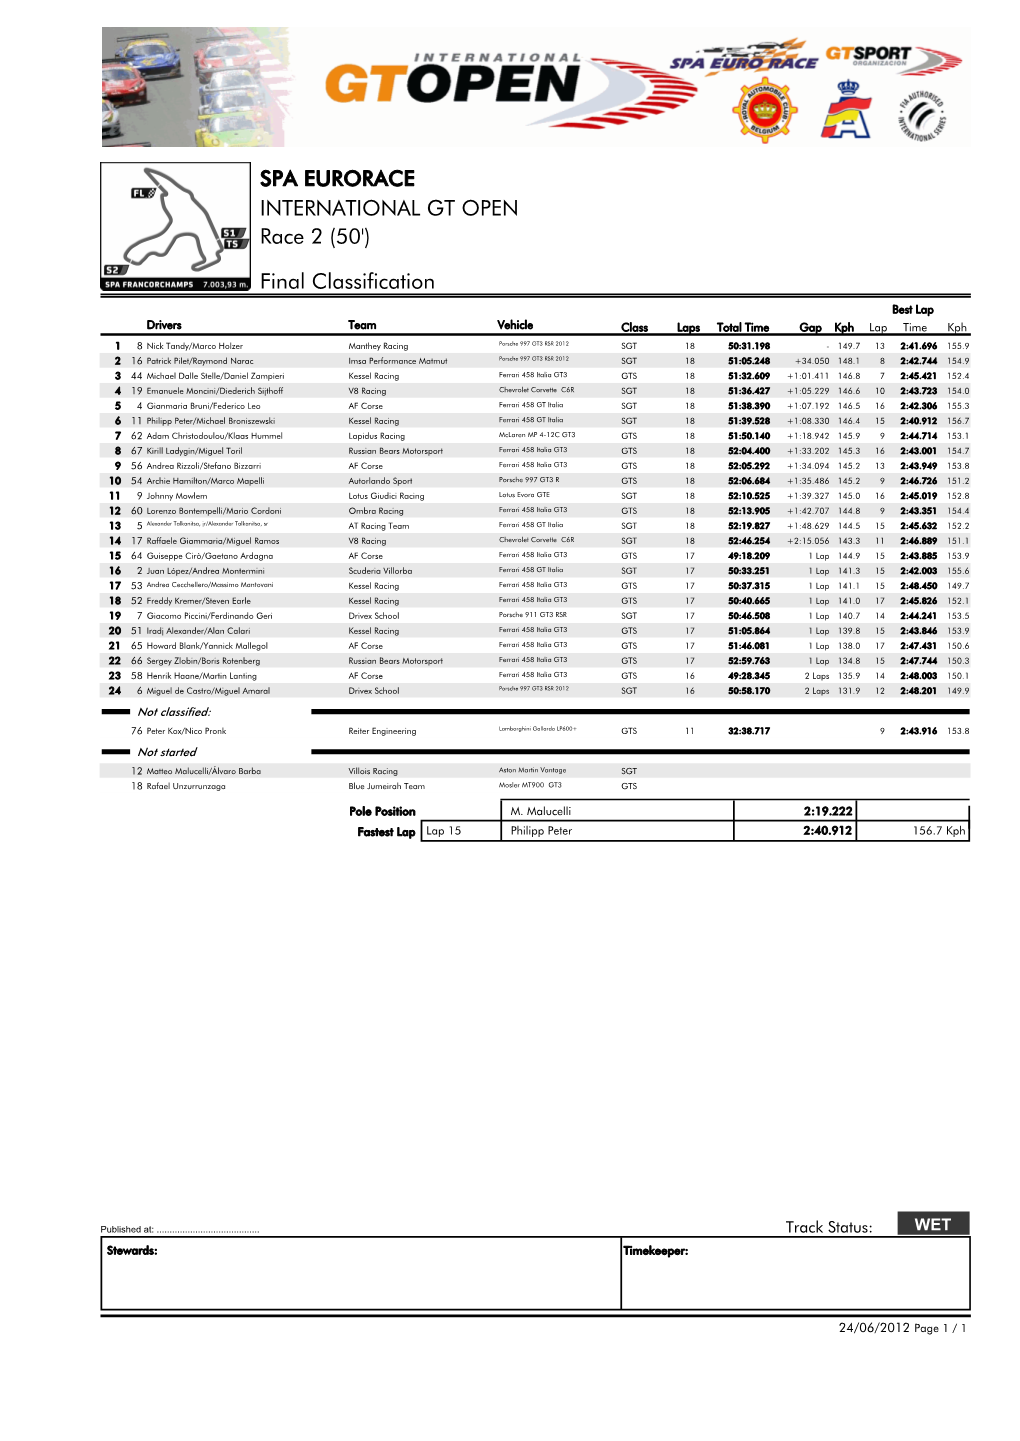 Final Classification SPA EURORACE INTERNATIONAL GT OPEN Race 2